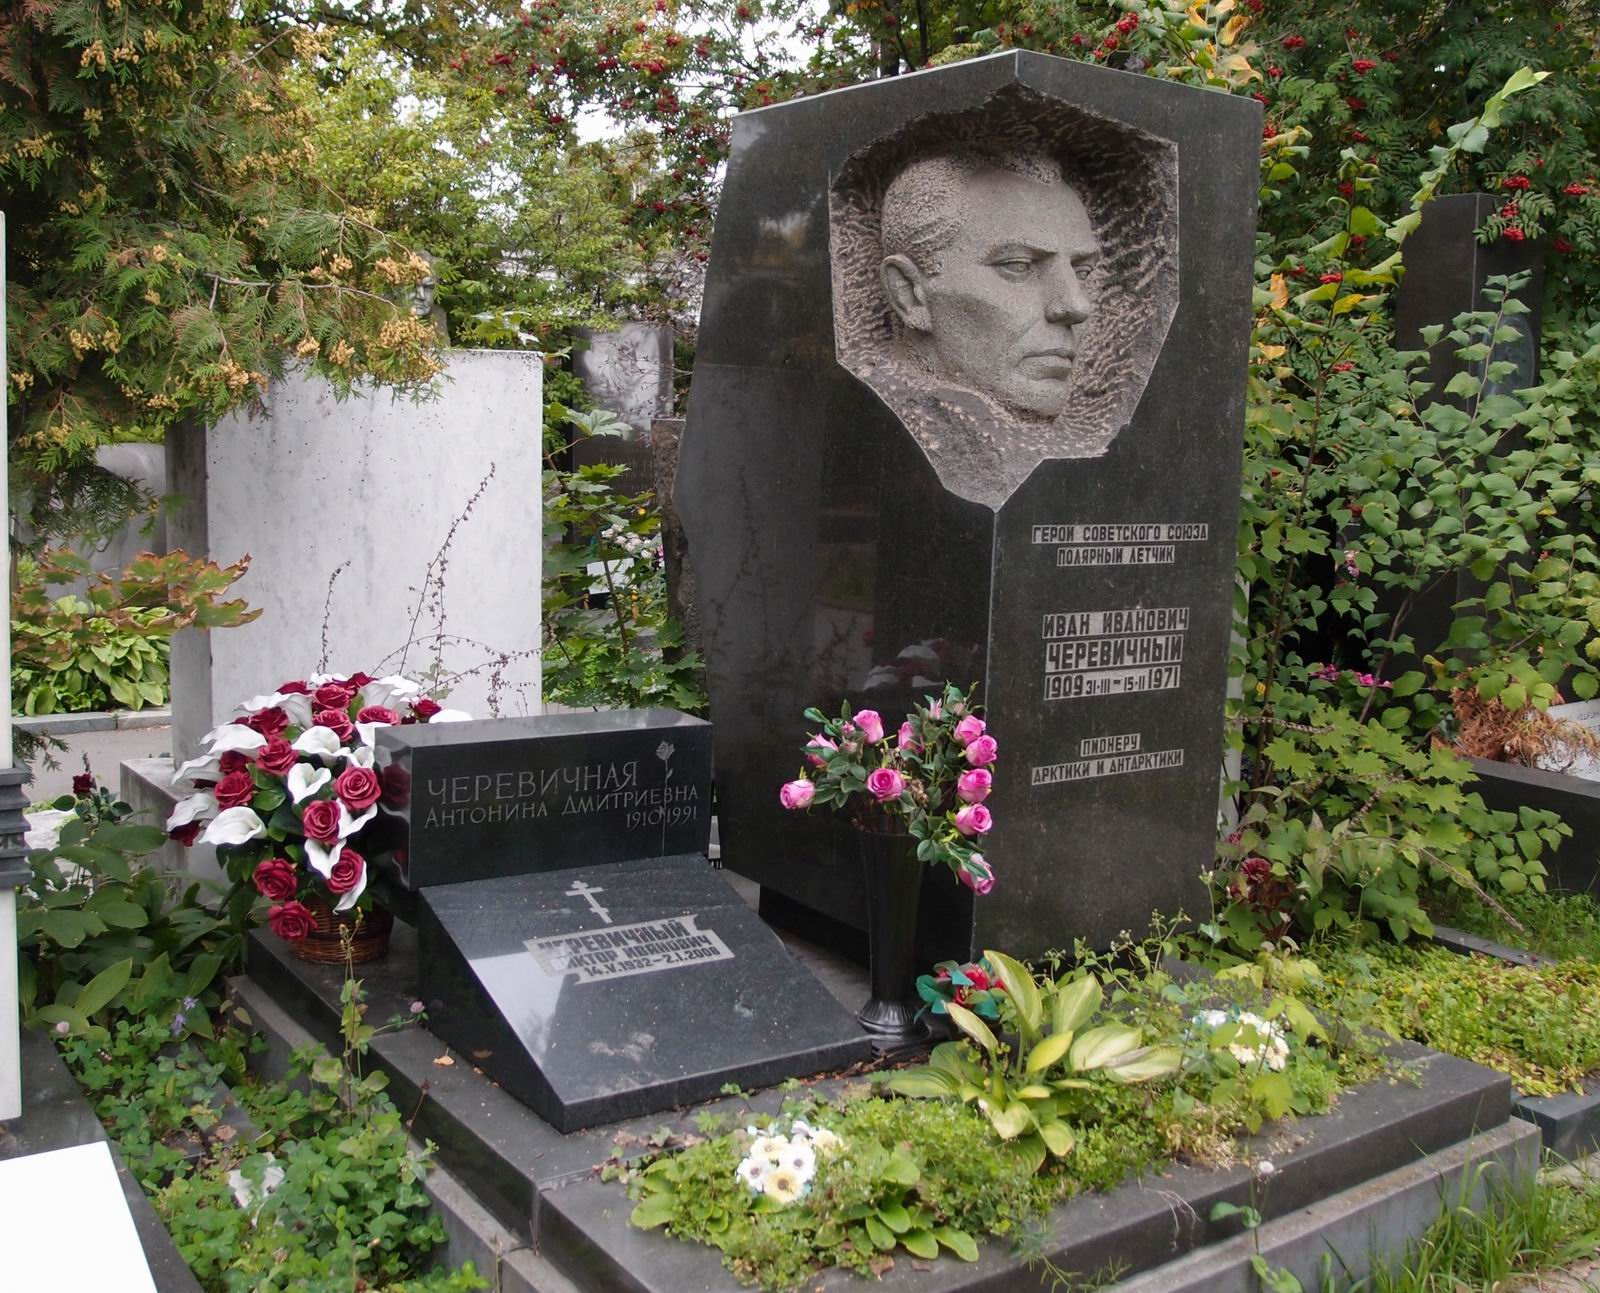 Памятник на могиле Черевичного И.И. (1909–1971), ск. В.Пилипер, на Новодевичьем кладбище (7–15–10). Нажмите левую кнопку мыши чтобы увидеть фрагмент памятника.